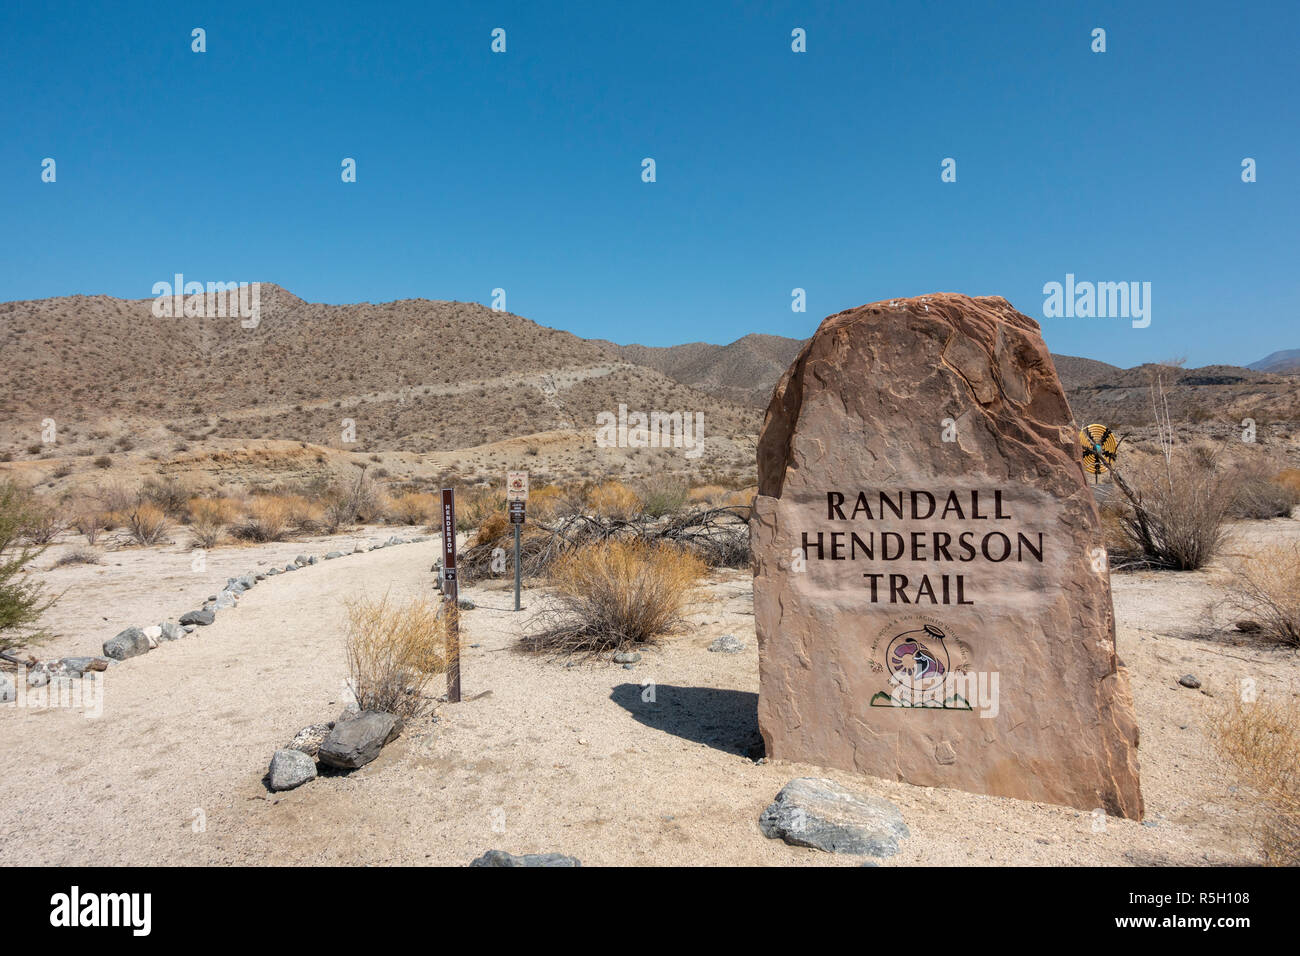 La entrada al sendero de Randall Henderson, Santa Rosa y San Jacinto Mountains National Monument Visitor Center, Palm Desert, CA, EE.UU. Foto de stock